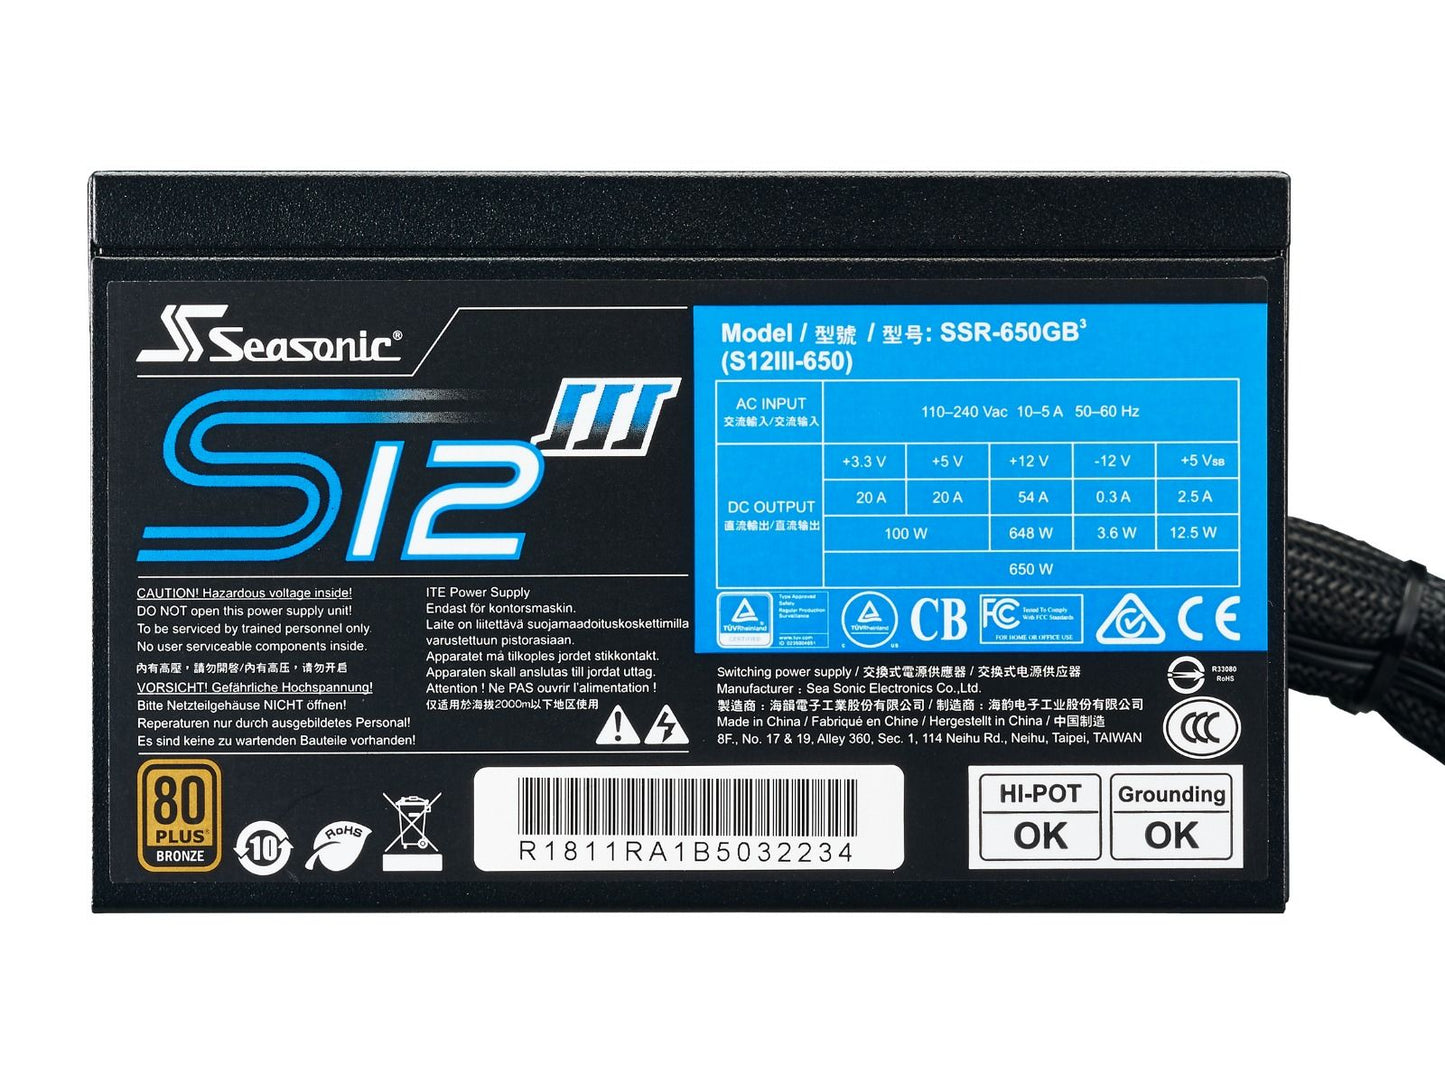 PSCBSSR650GB3- Seasonic SSR-650GB3 650W ATX12V PSU 80+ Bronze